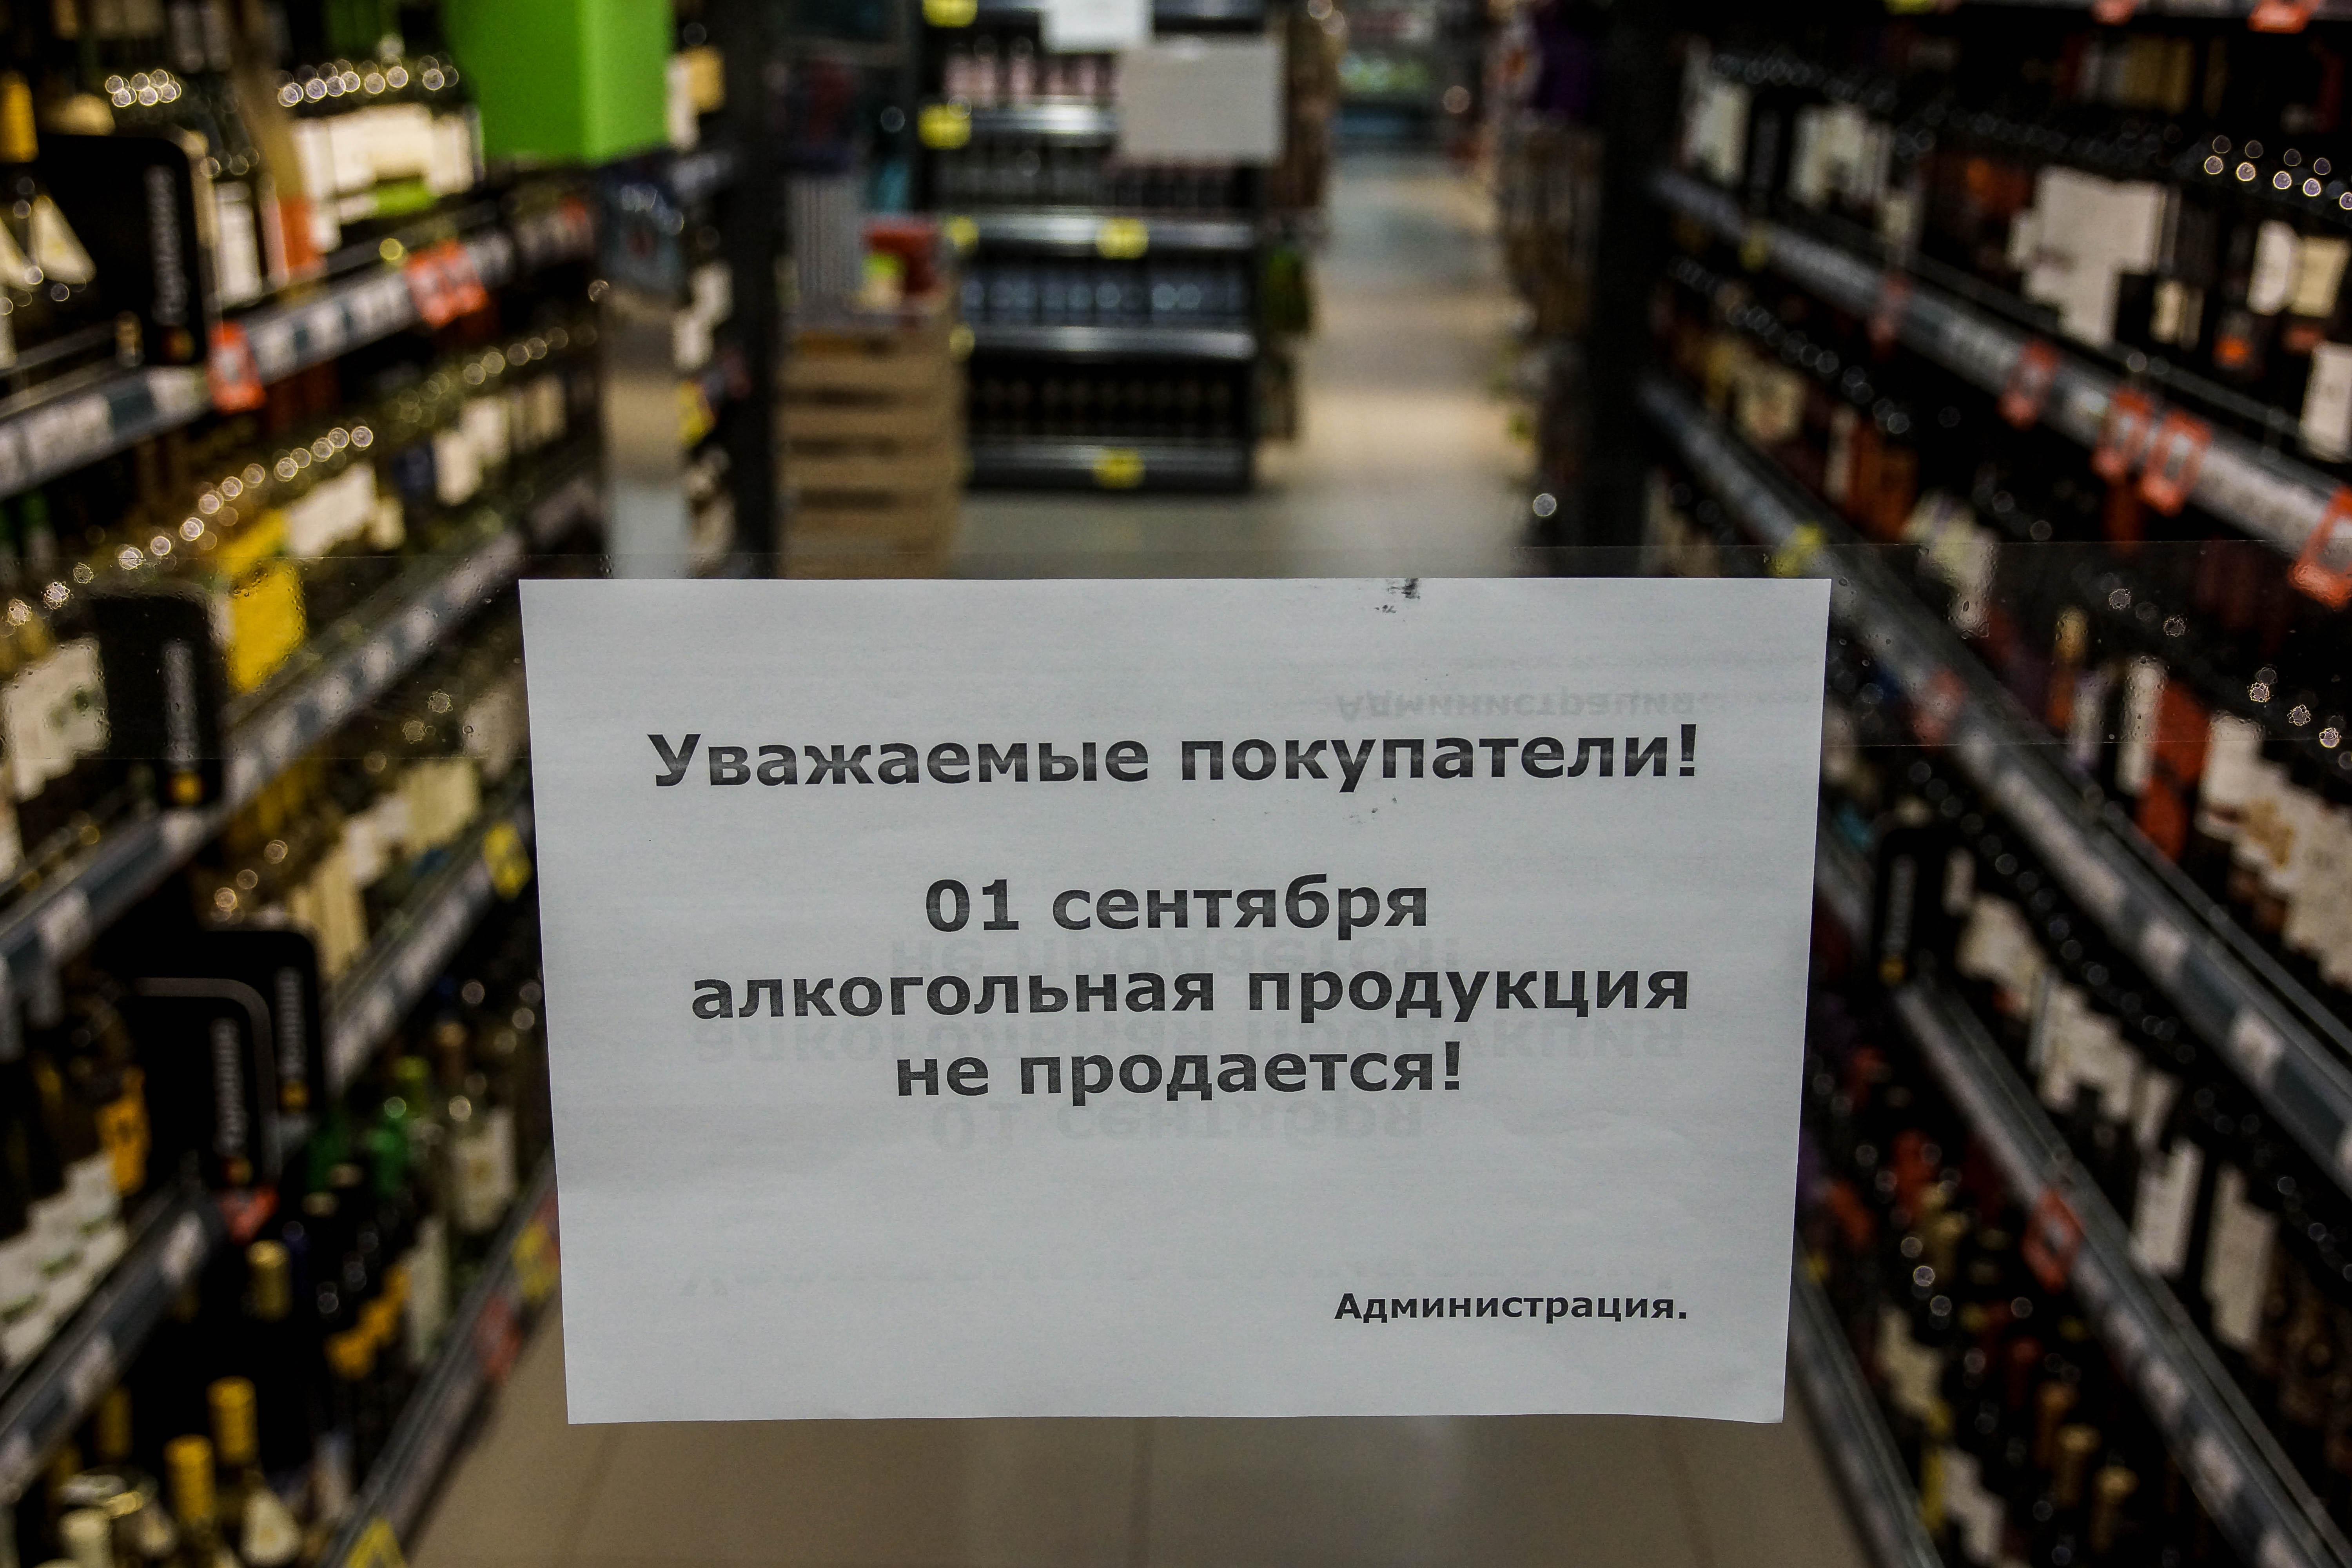 Запрет на куплю продажу. Торговля алкогольной продукцией. Запрет алкогольной продукции. Алкогольная продукция не продается.